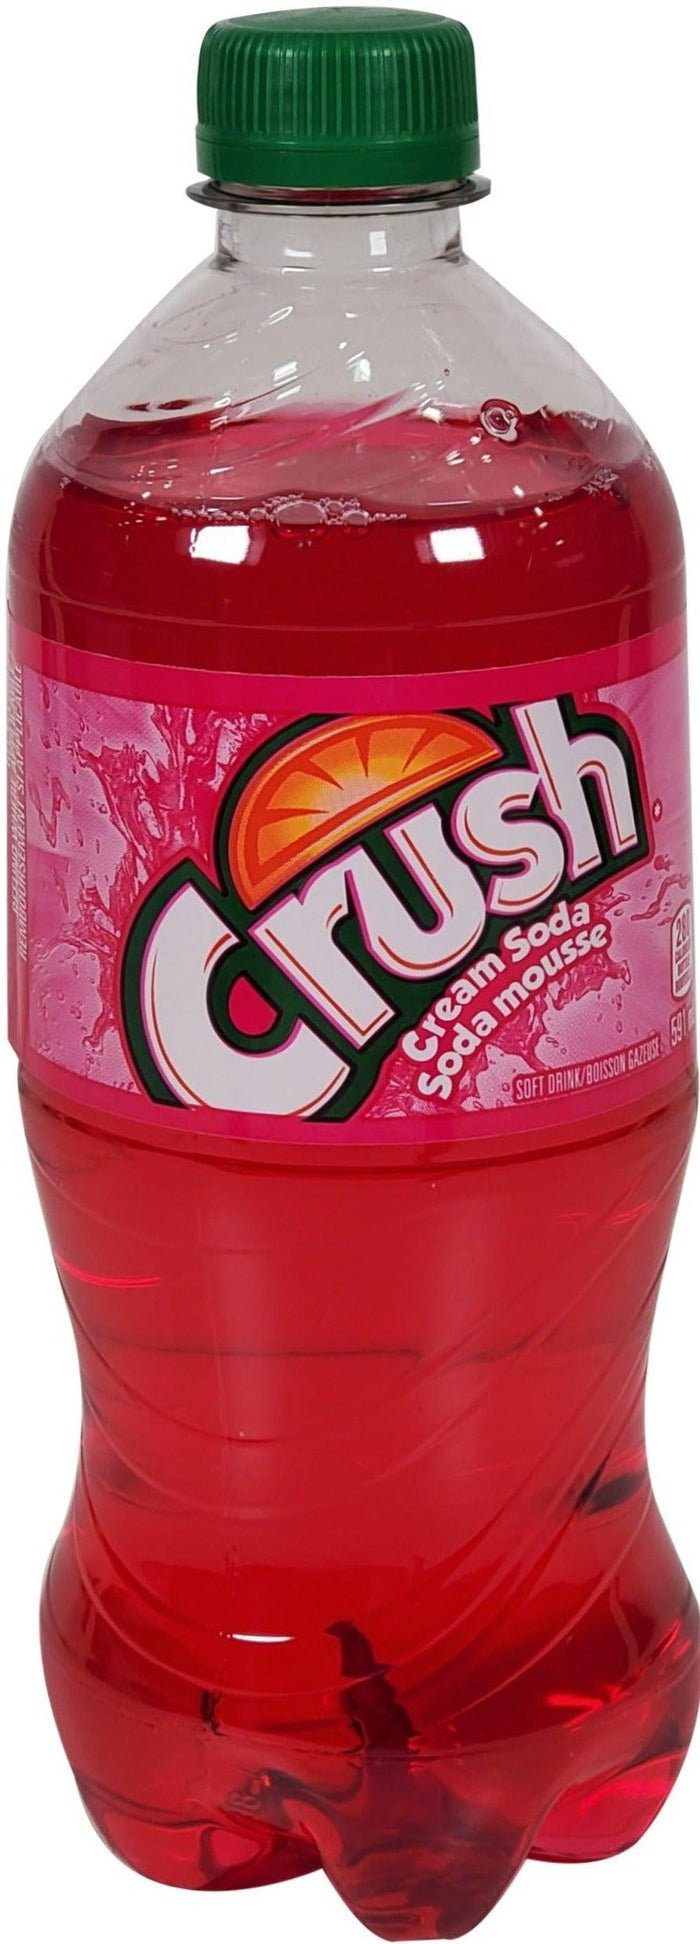 Crush - Cream Soda - PET